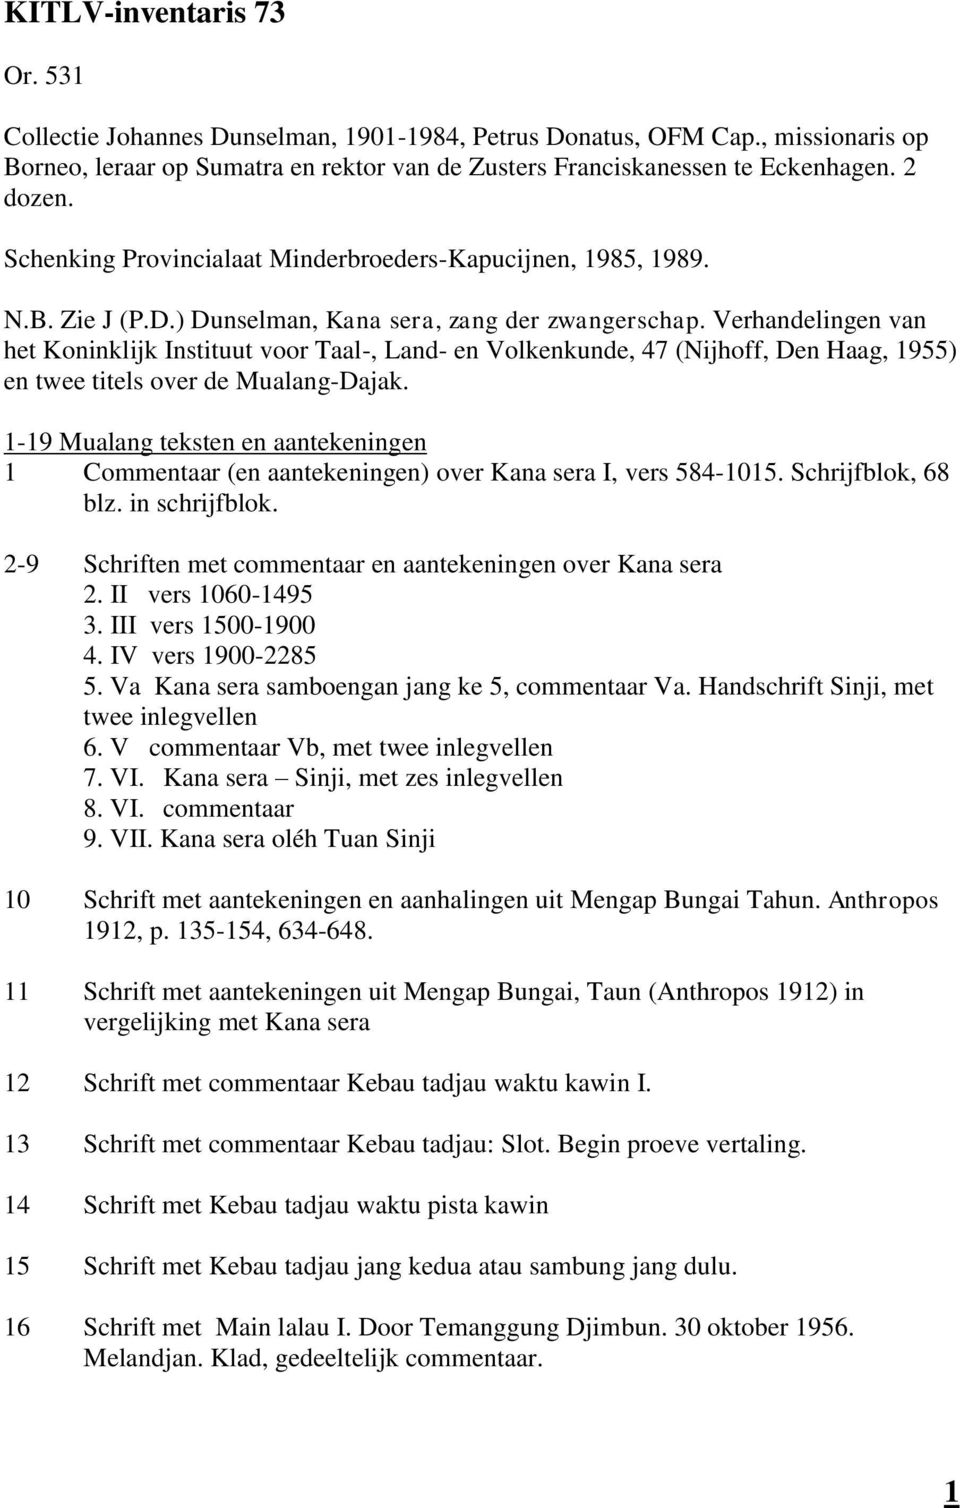 Verhandelingen van het Koninklijk Instituut voor Taal-, Land- en Volkenkunde, 47 (Nijhoff, Den Haag, 1955) en twee titels over de Mualang-Dajak.